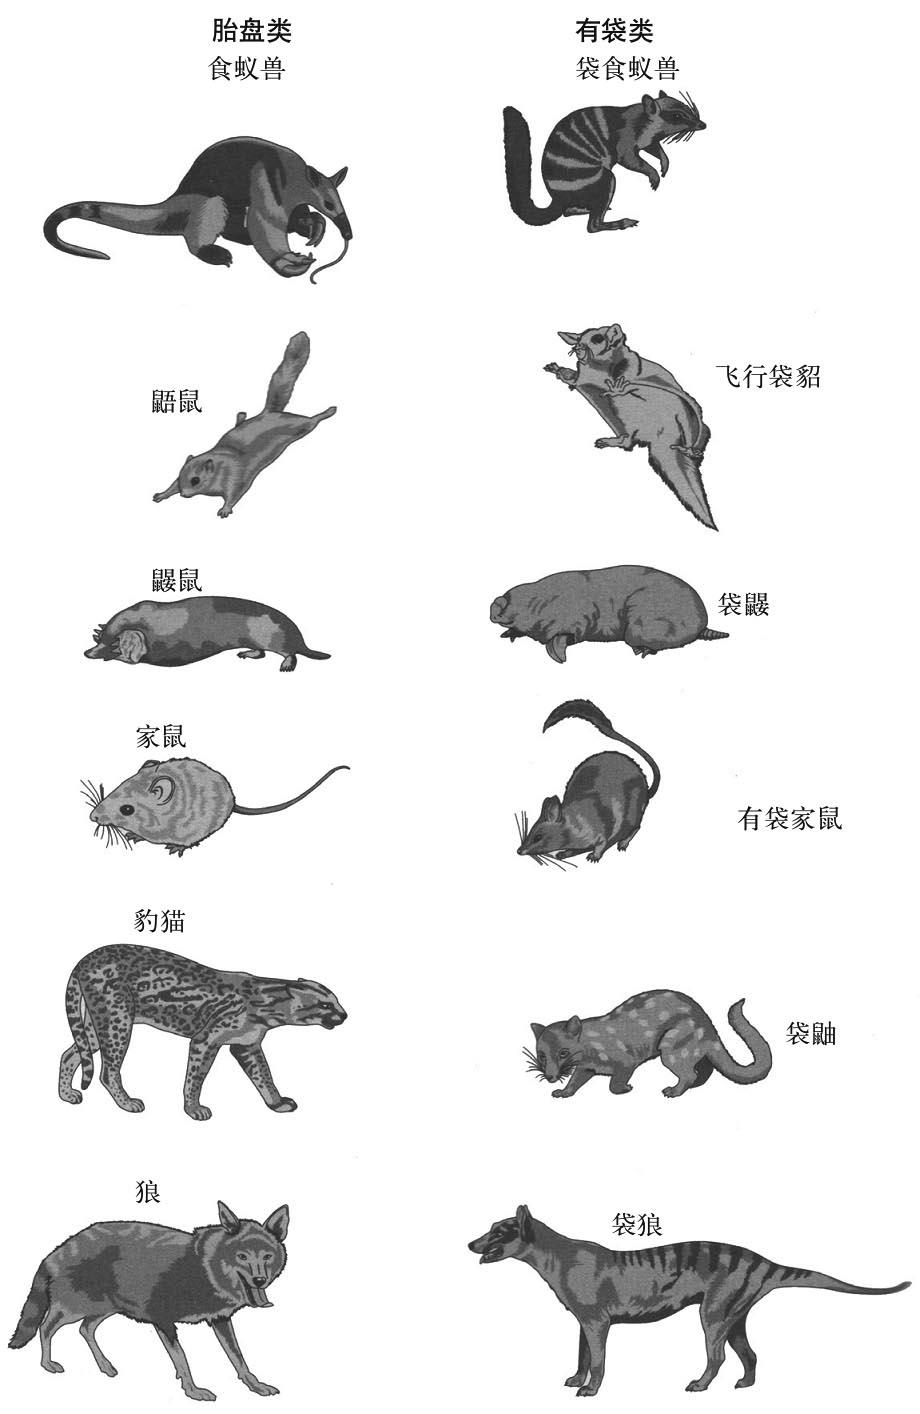 有袋类哺乳动物和胎盘类哺乳动物对应物种